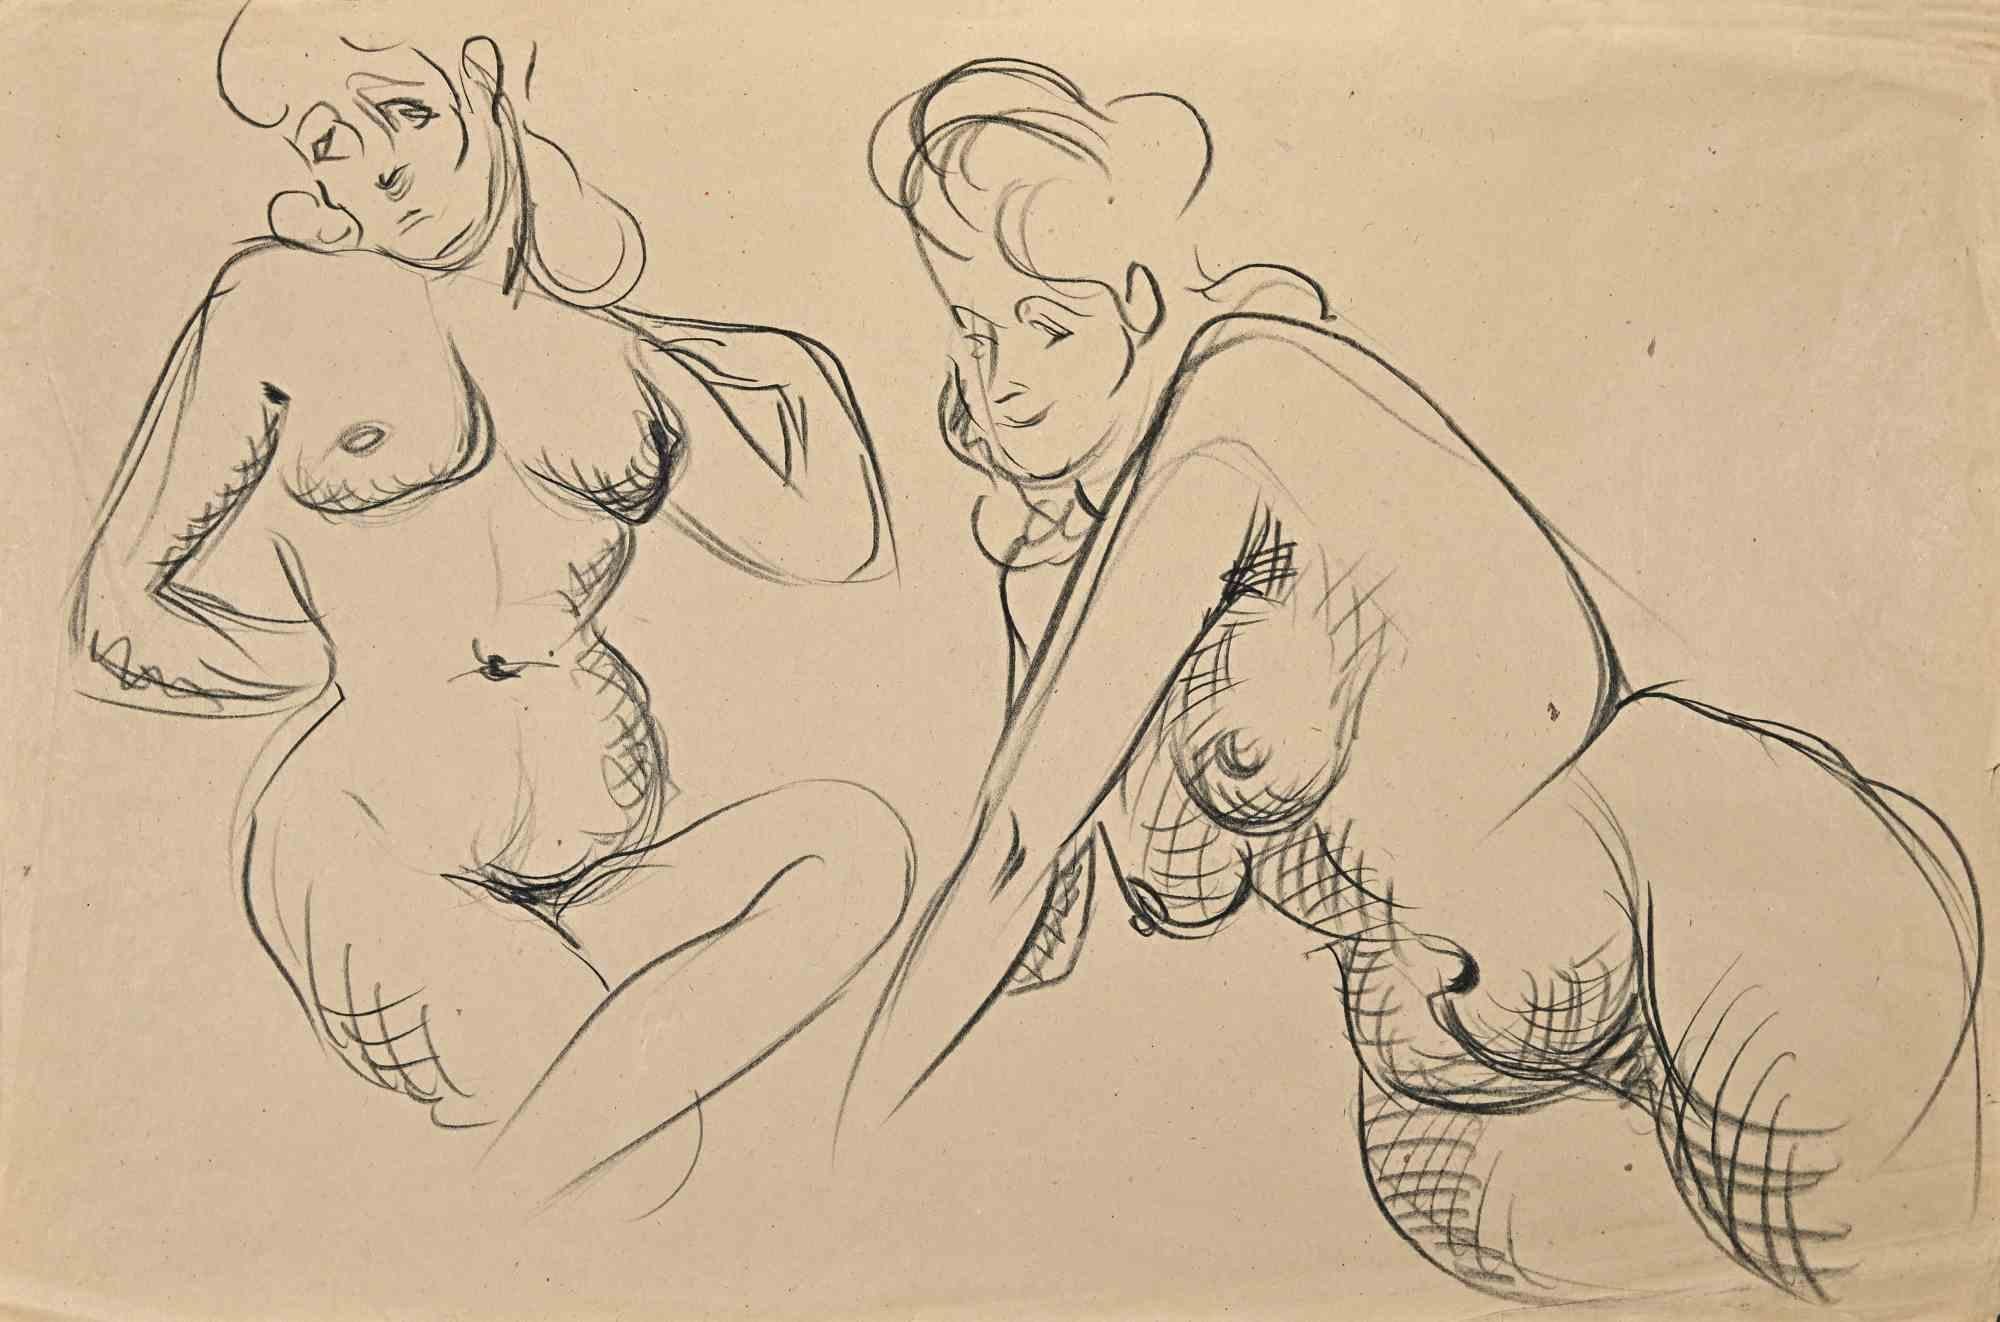 Posing Nude ist eine Kohlezeichnung von Jean Chapin aus den 1950er Jahren.

Guter Zustand und gealtert.

Jean Chapin ist ein französischer Maler und Lithograf, der am 21. Februar 1896 in Paris geboren wurde und am 24. Mai 1994 in Jouy-sur-Morin